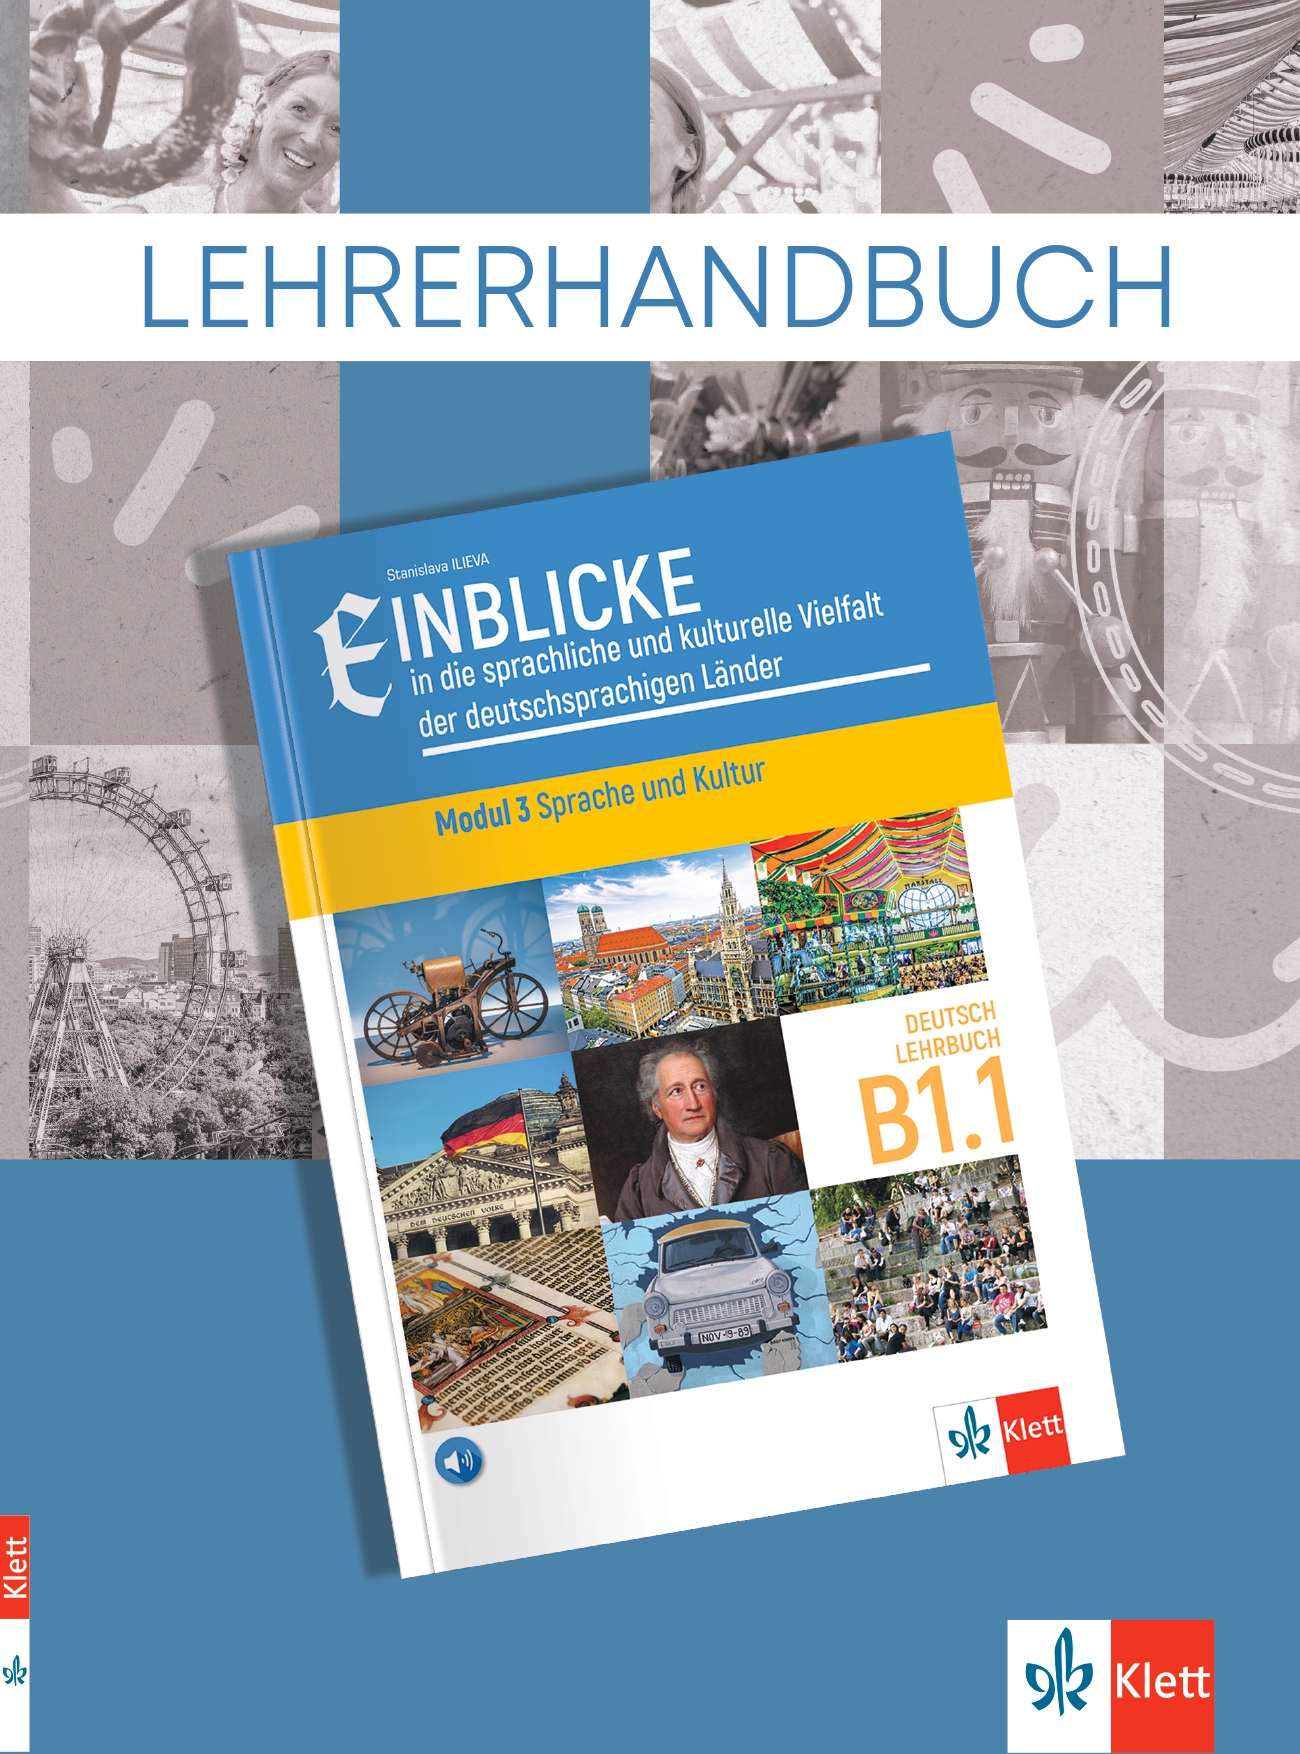 Einblicke in die sprachliche und kulturelle Vielfalt der deutschsrachigen Lander Lehrbuch B1.1: Modul 3 Sprache und Kultur: Lehrerhandbuch